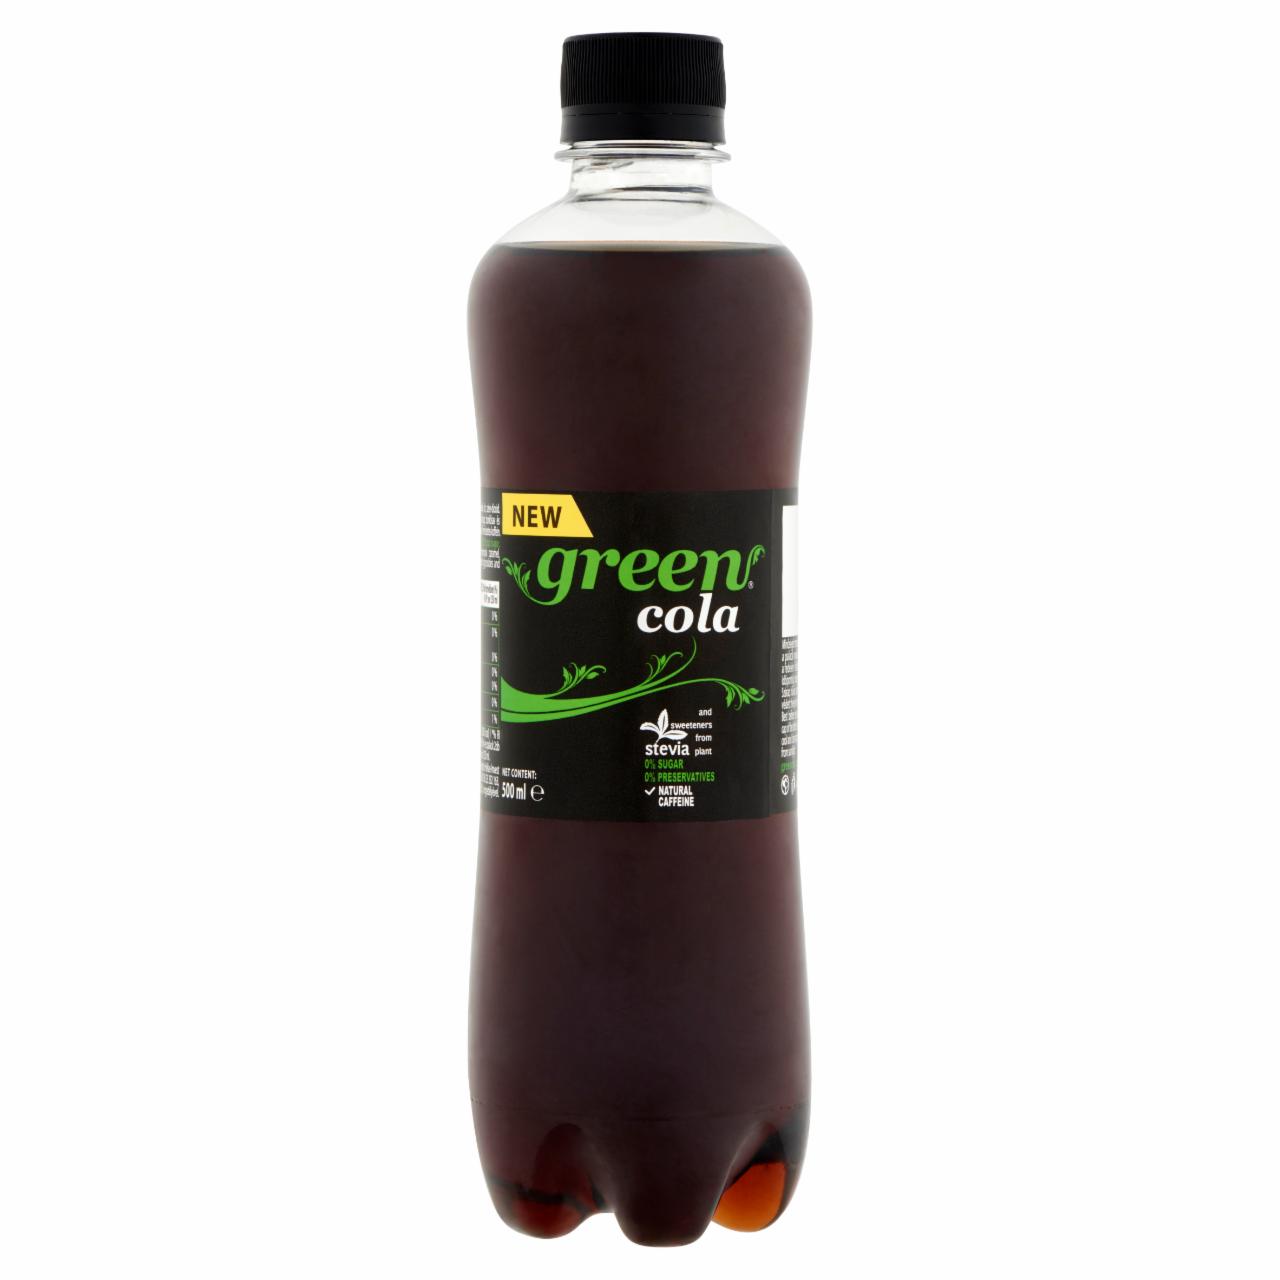 Képek - Green cola ízű szénsavas üdítőital stevia-val ízesítve 500 ml